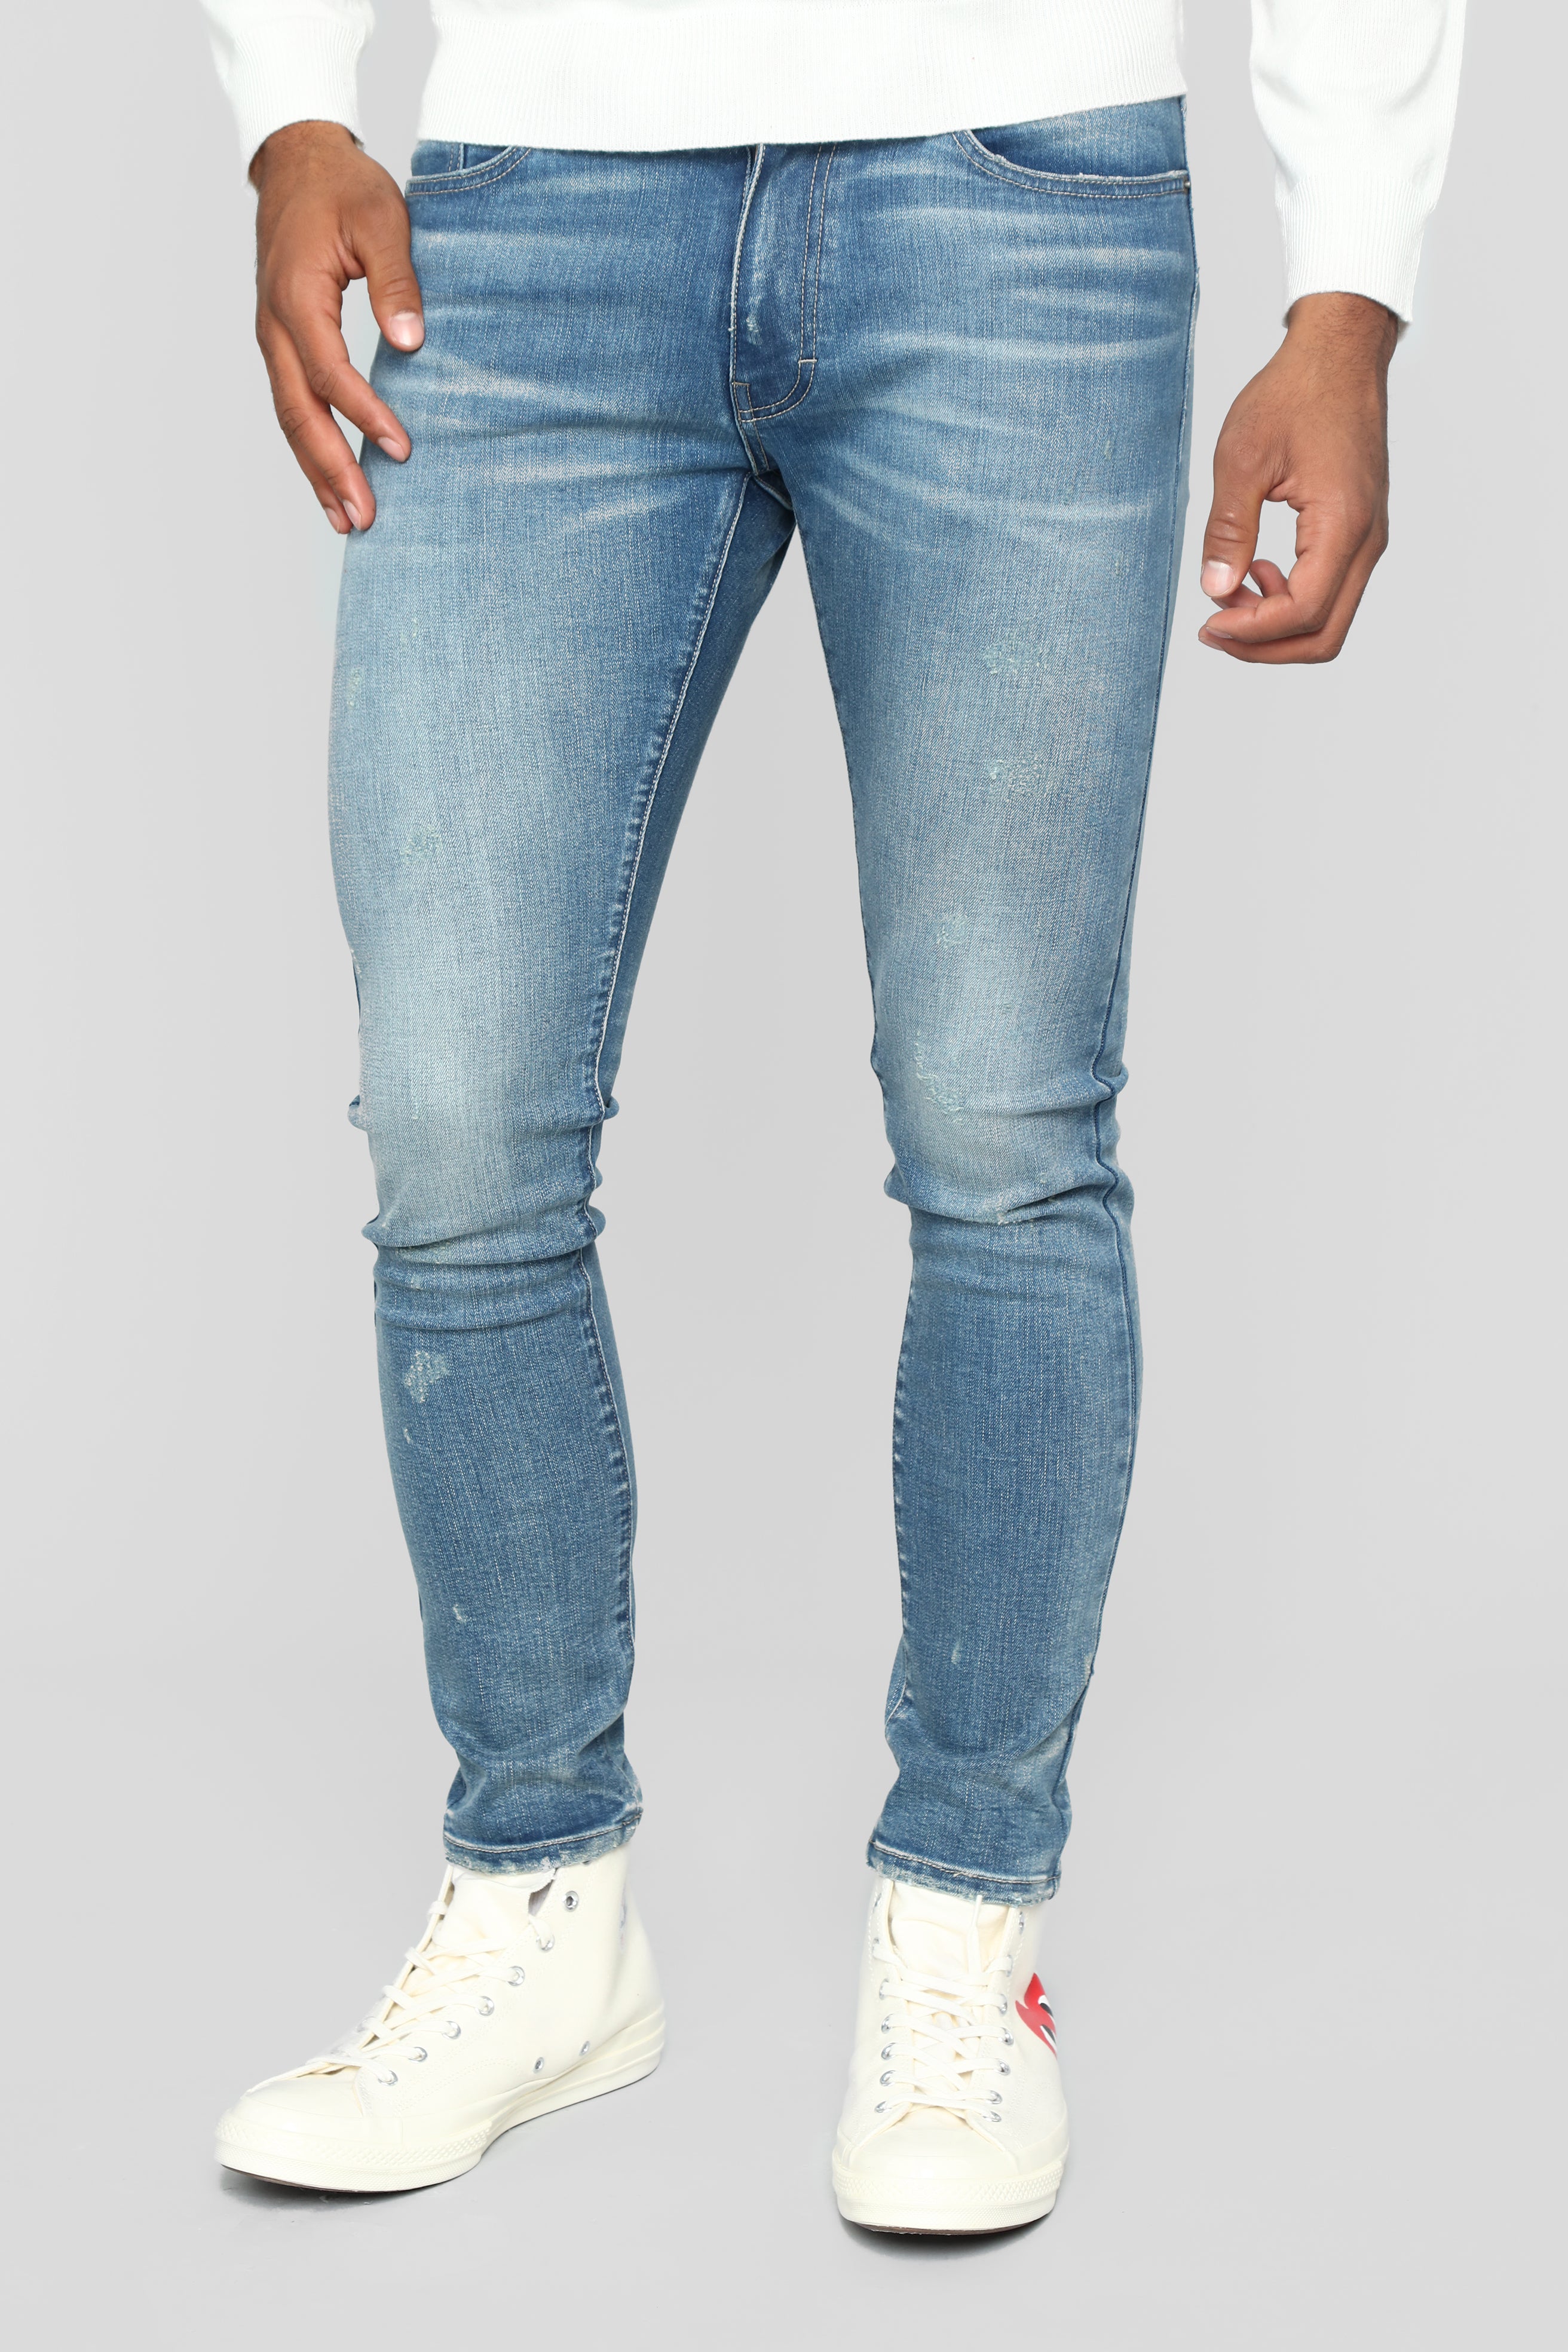 Split Skinny Jeans - Medium Wash